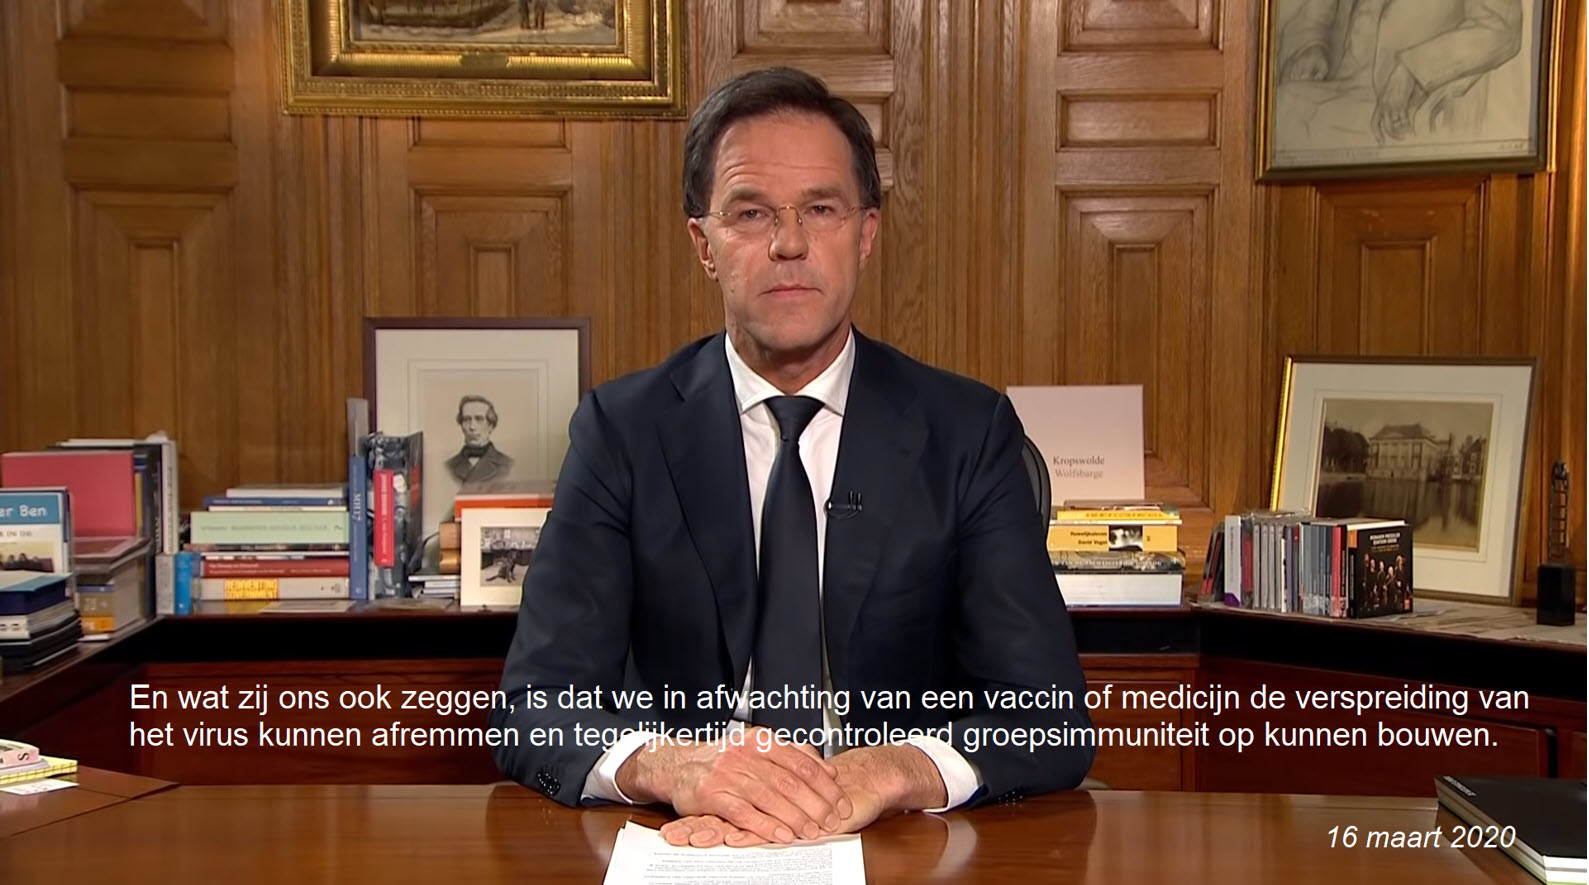 Rust er een taboe in Nederland op medicijnen? - 25496